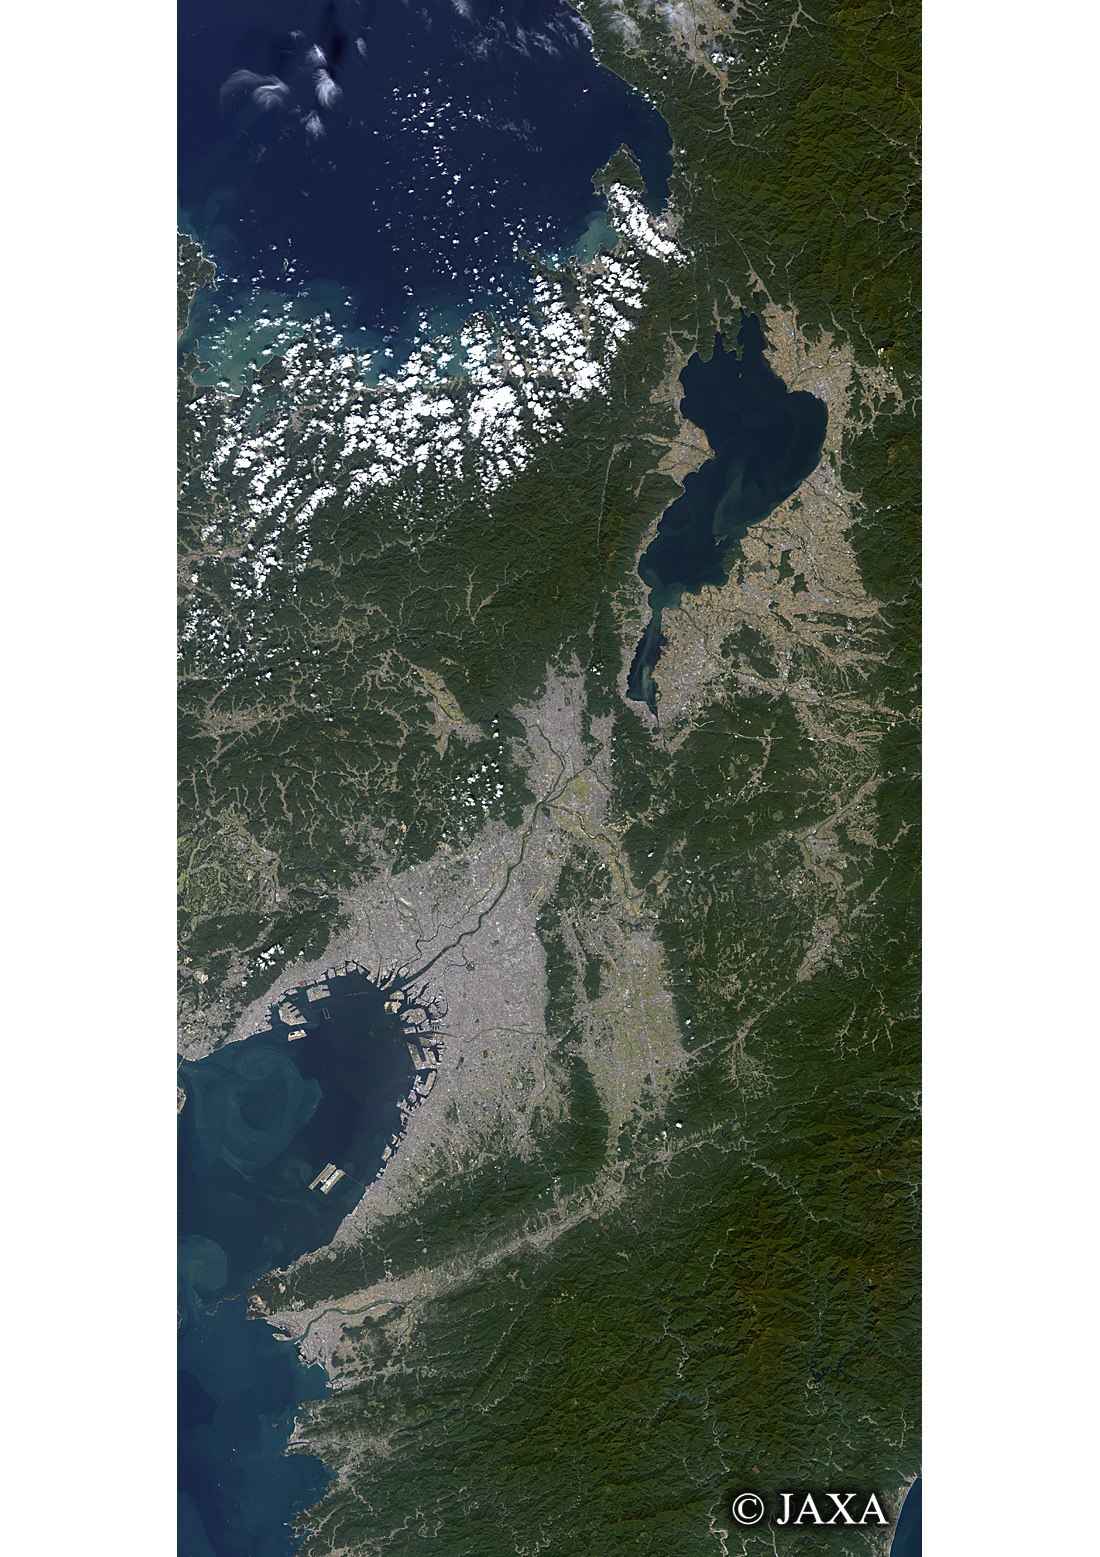 だいちから見た日本の都市 近畿地方:衛星画像